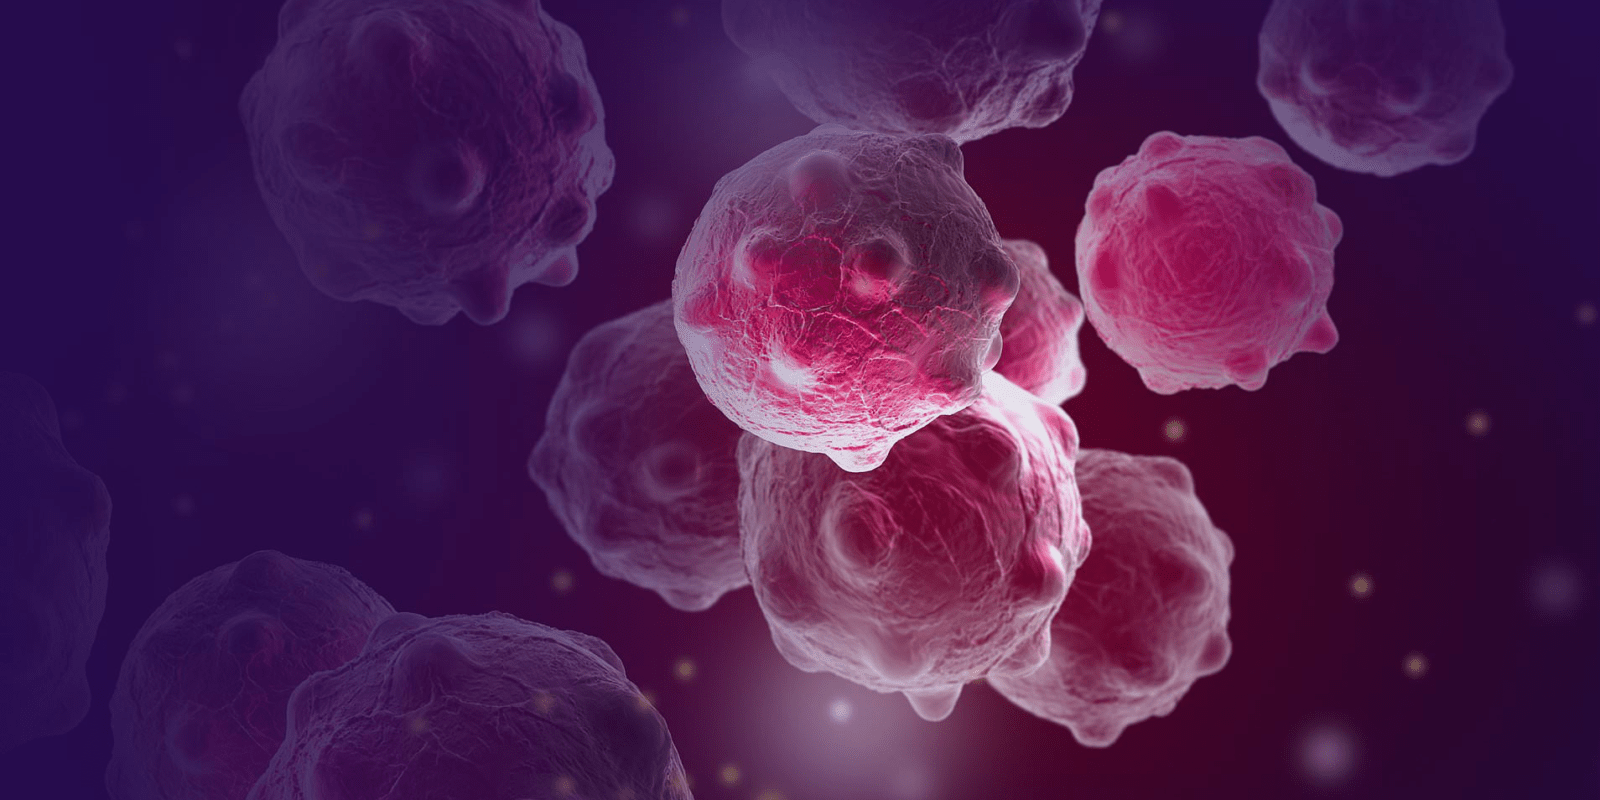 ماذا لو حوّلنا خلايا سرطان الثدي إلى خلايا دهنية؟!